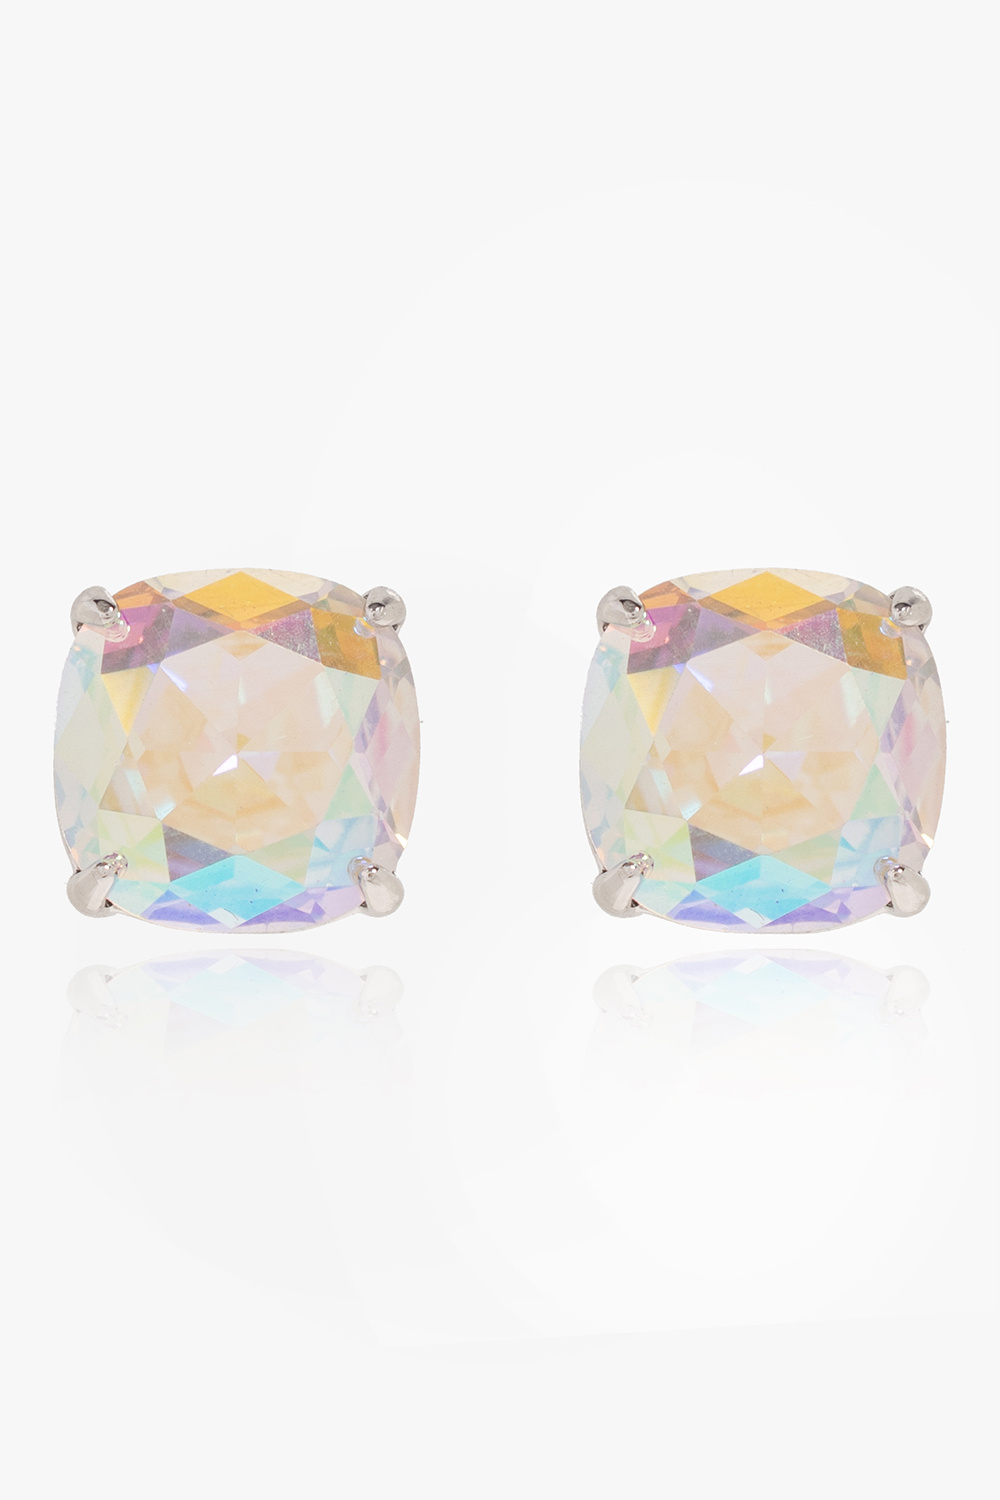 Kate Spade Crystals earrings